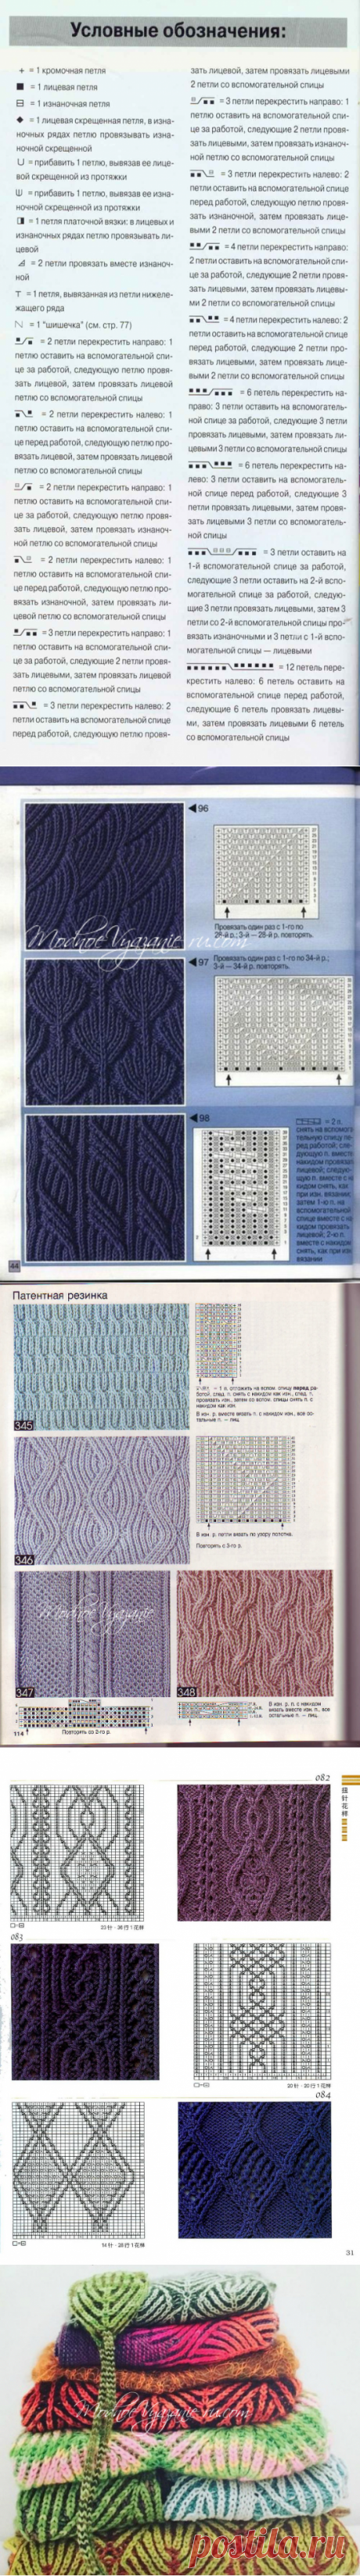 Схемы узоров в технике бриош - Модное вязание